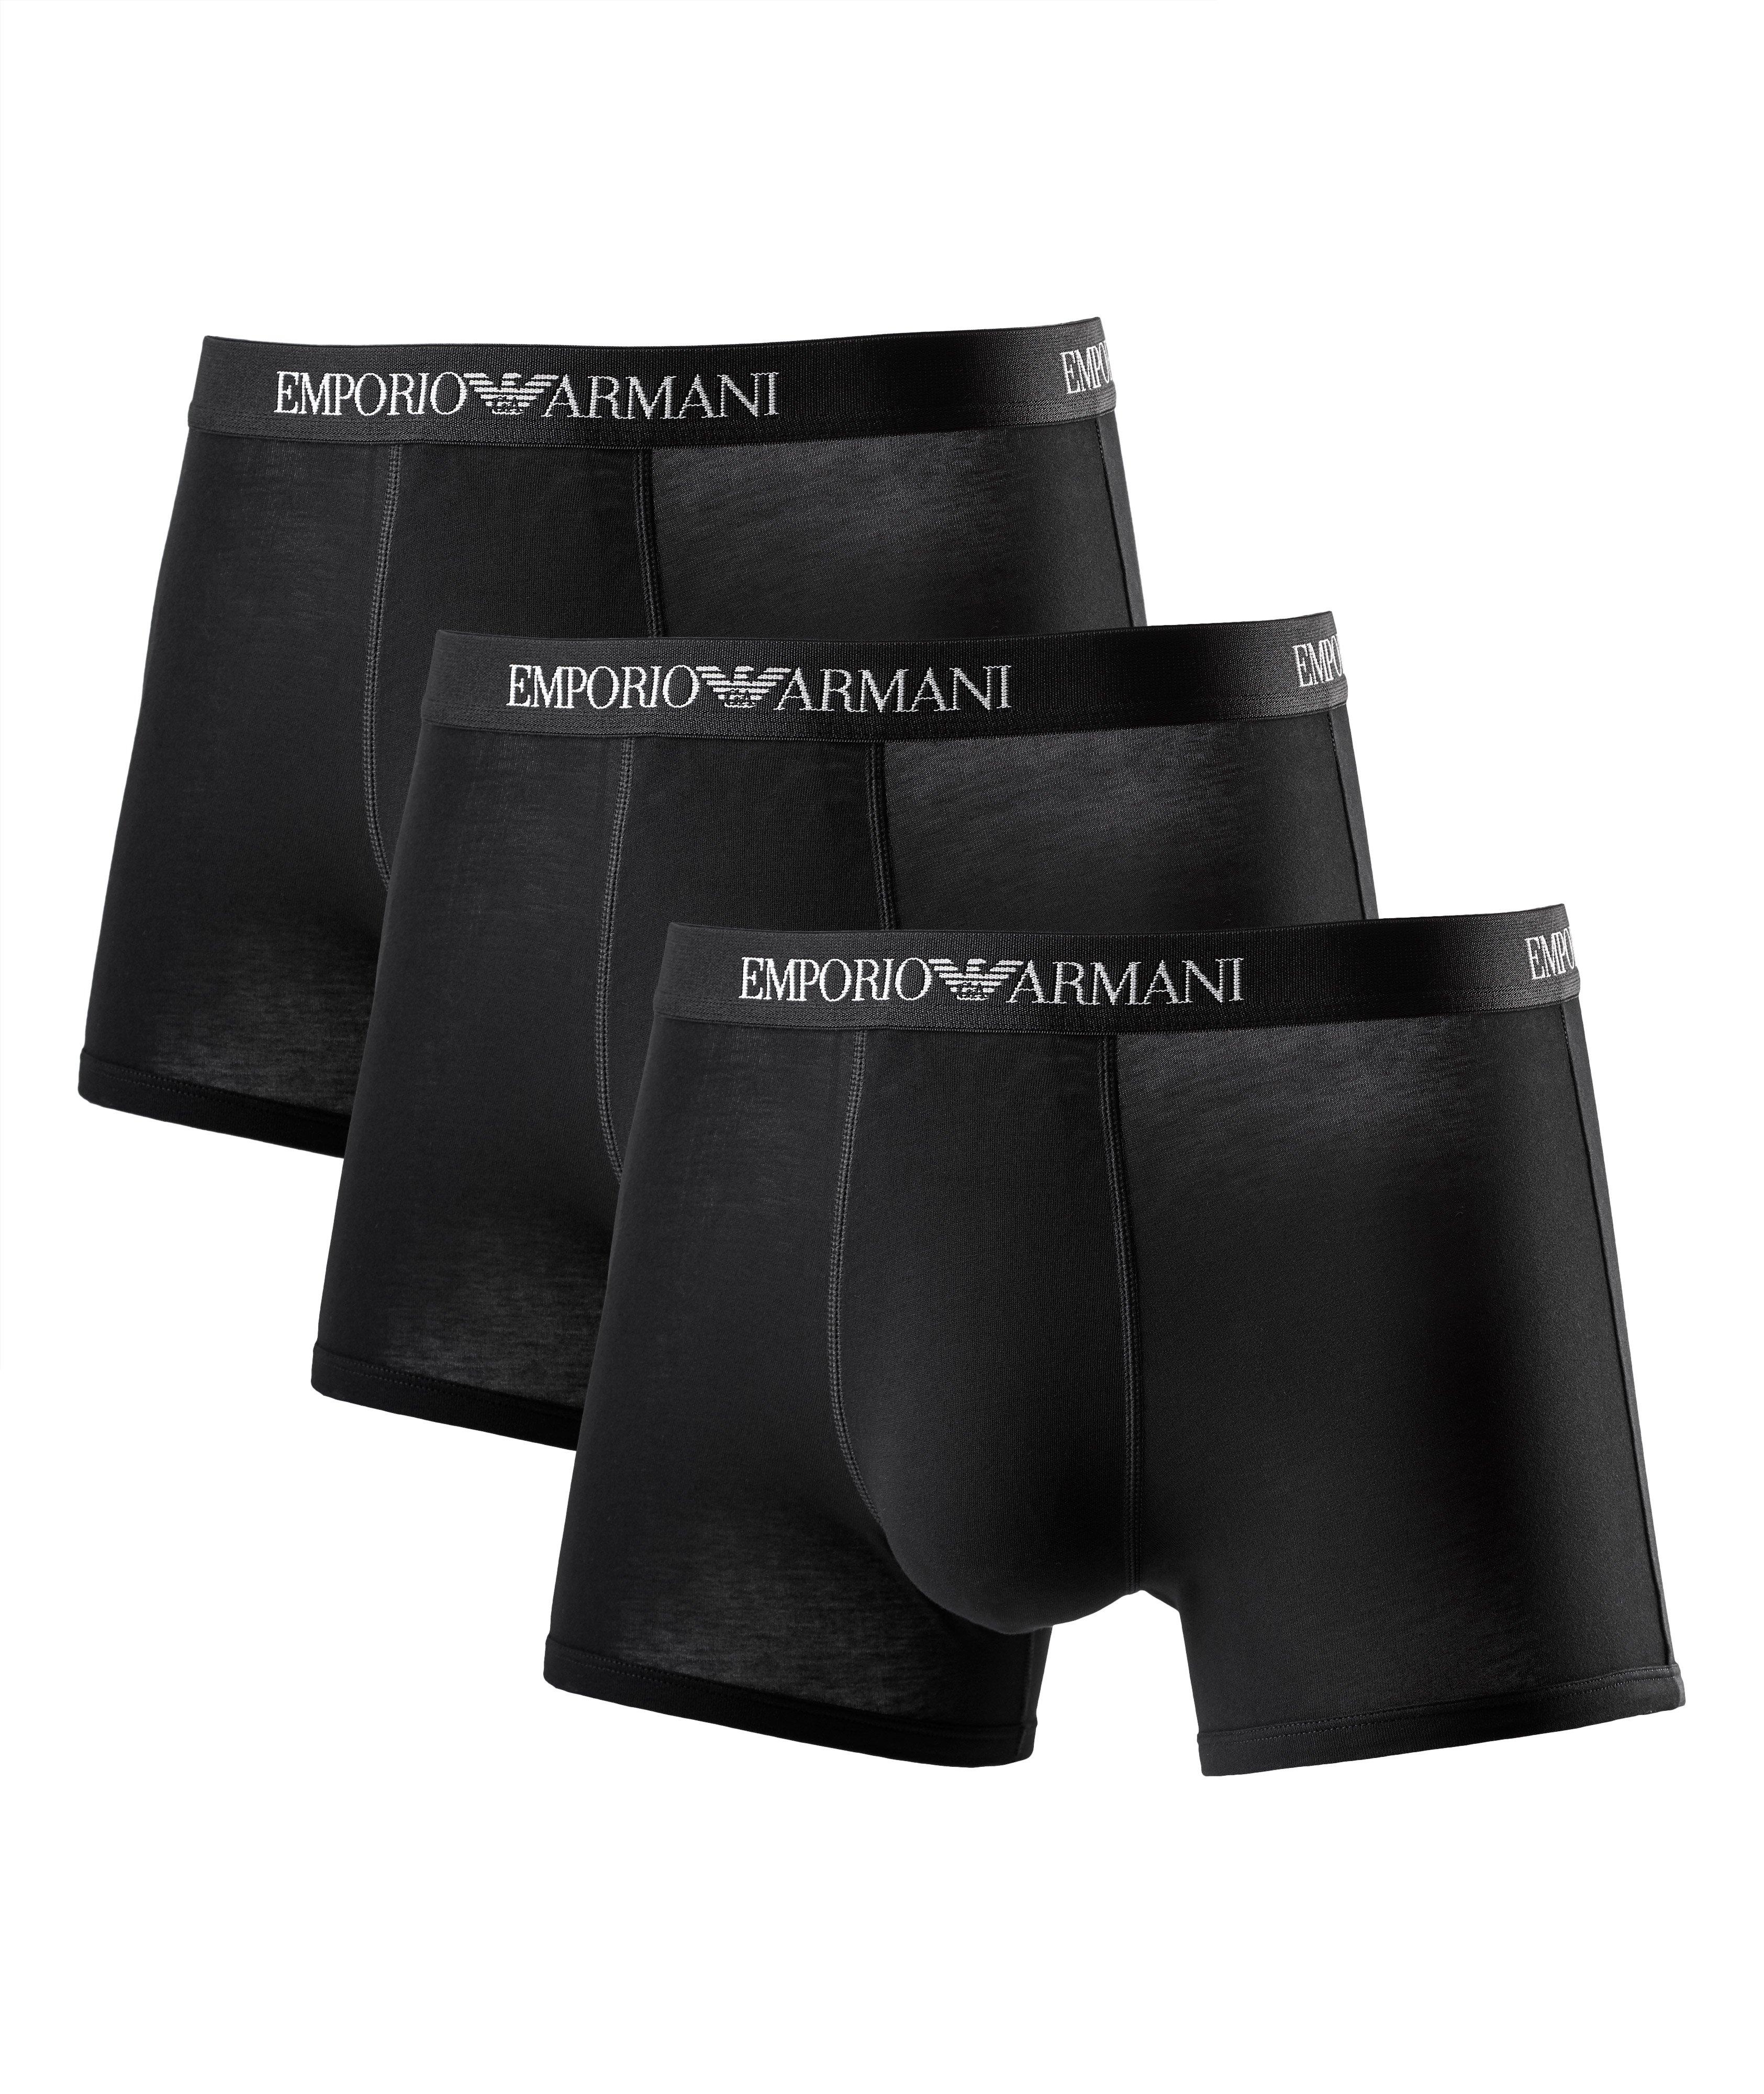 Emporio Armani Men's Stretch Cotton Boxer Brief, Black, Small at